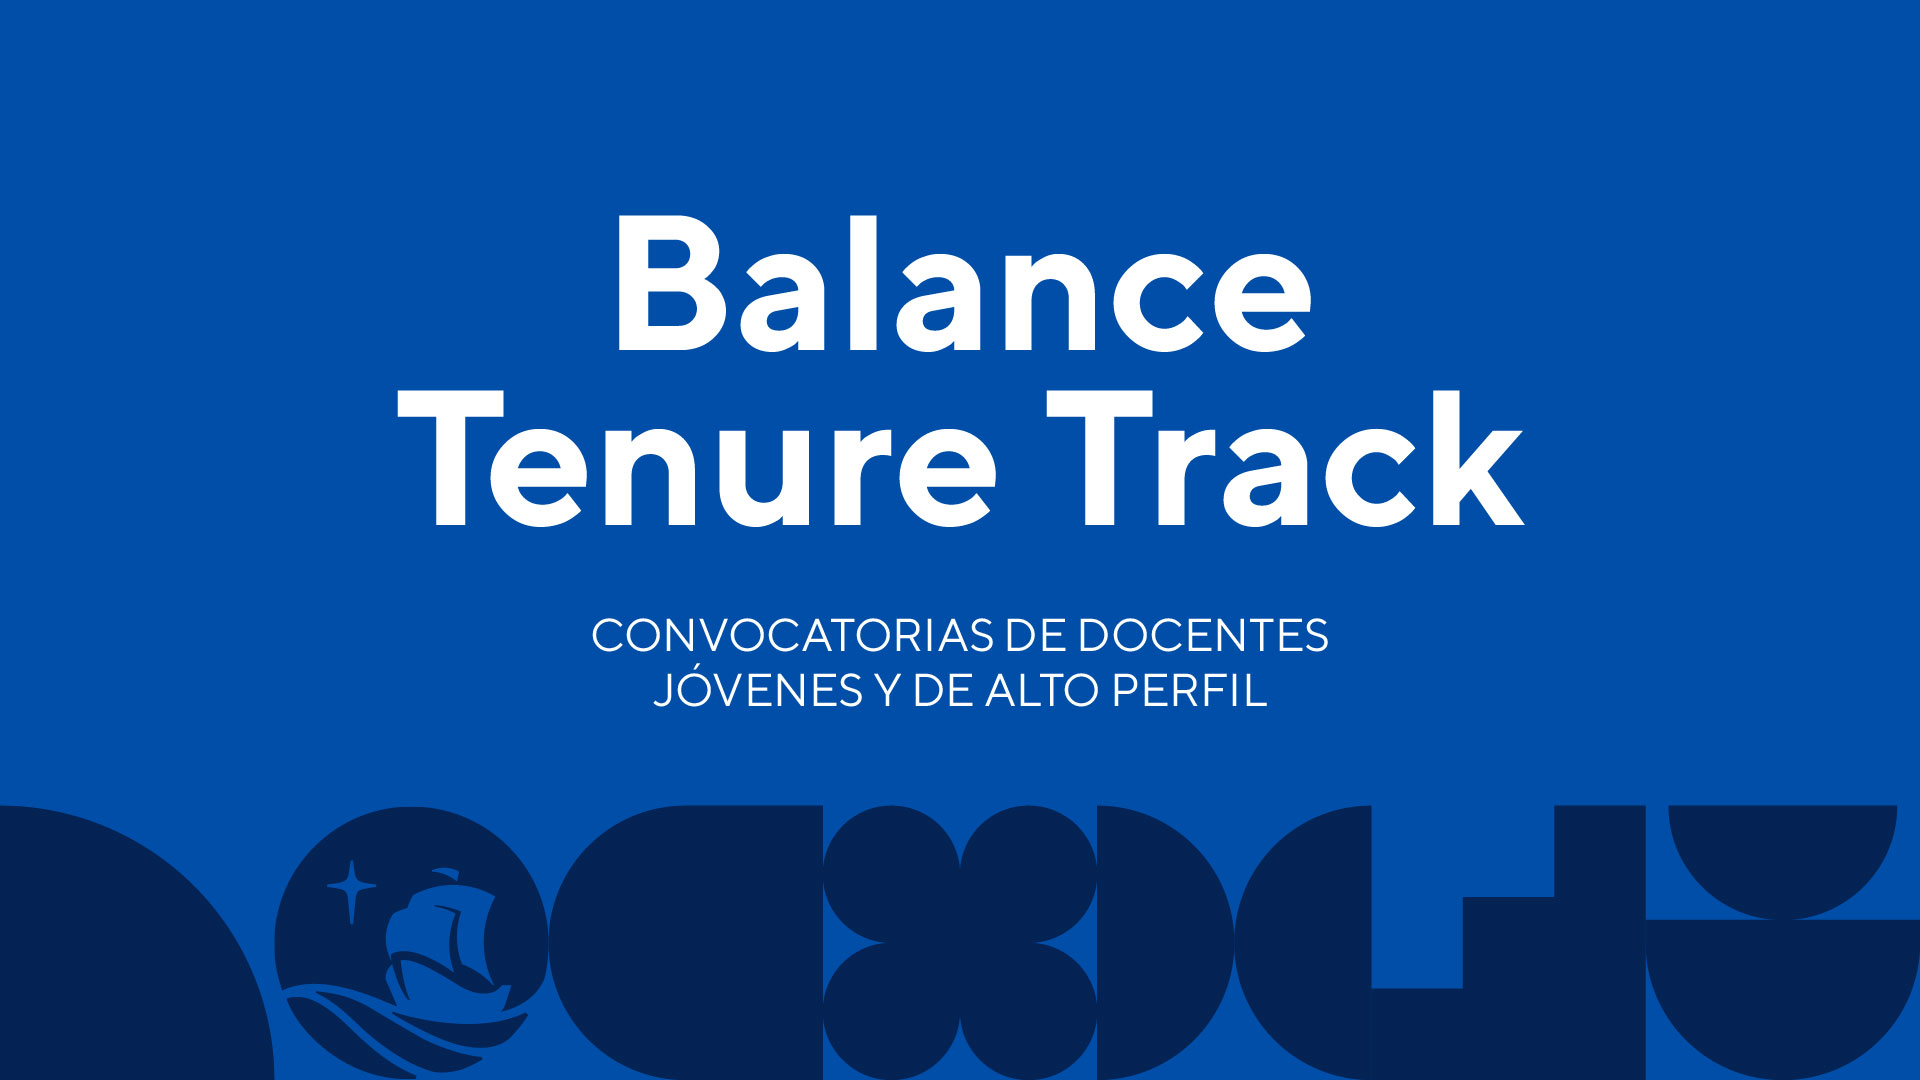 Balance Ternure Track